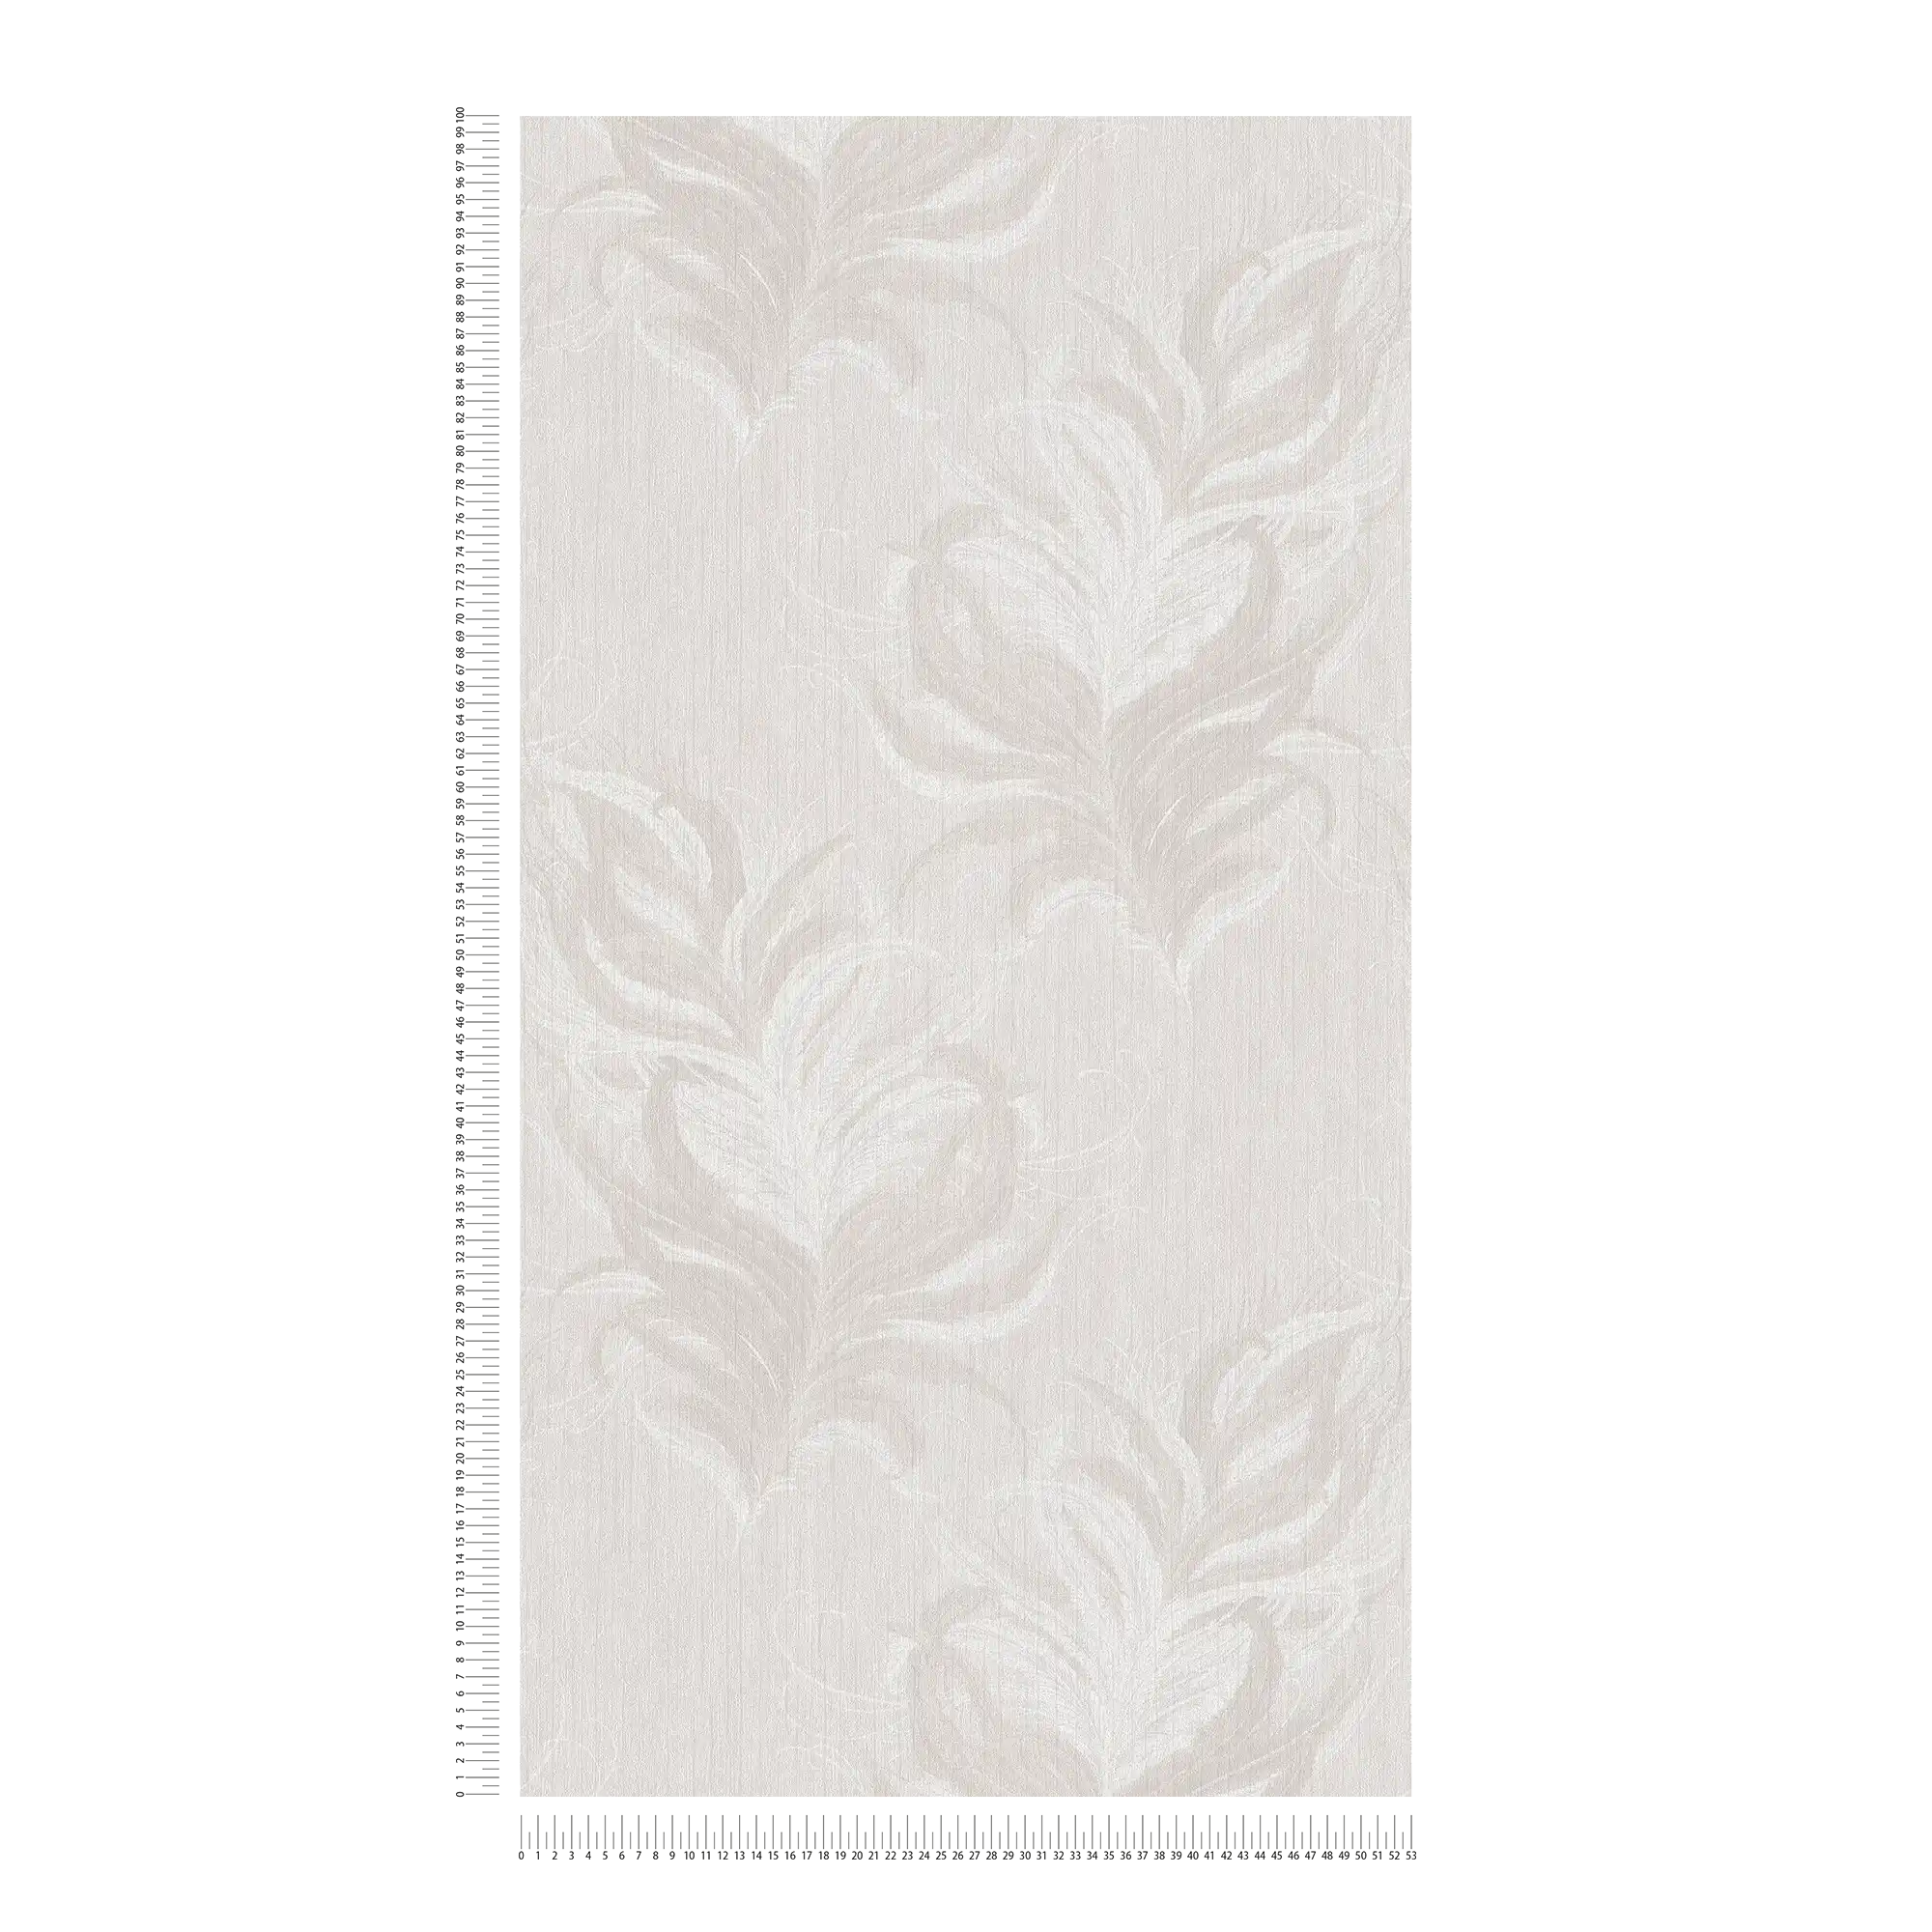             Vliestapete mit Federn Design & Struktur Glanzeffekt – Weiß, Grau
        